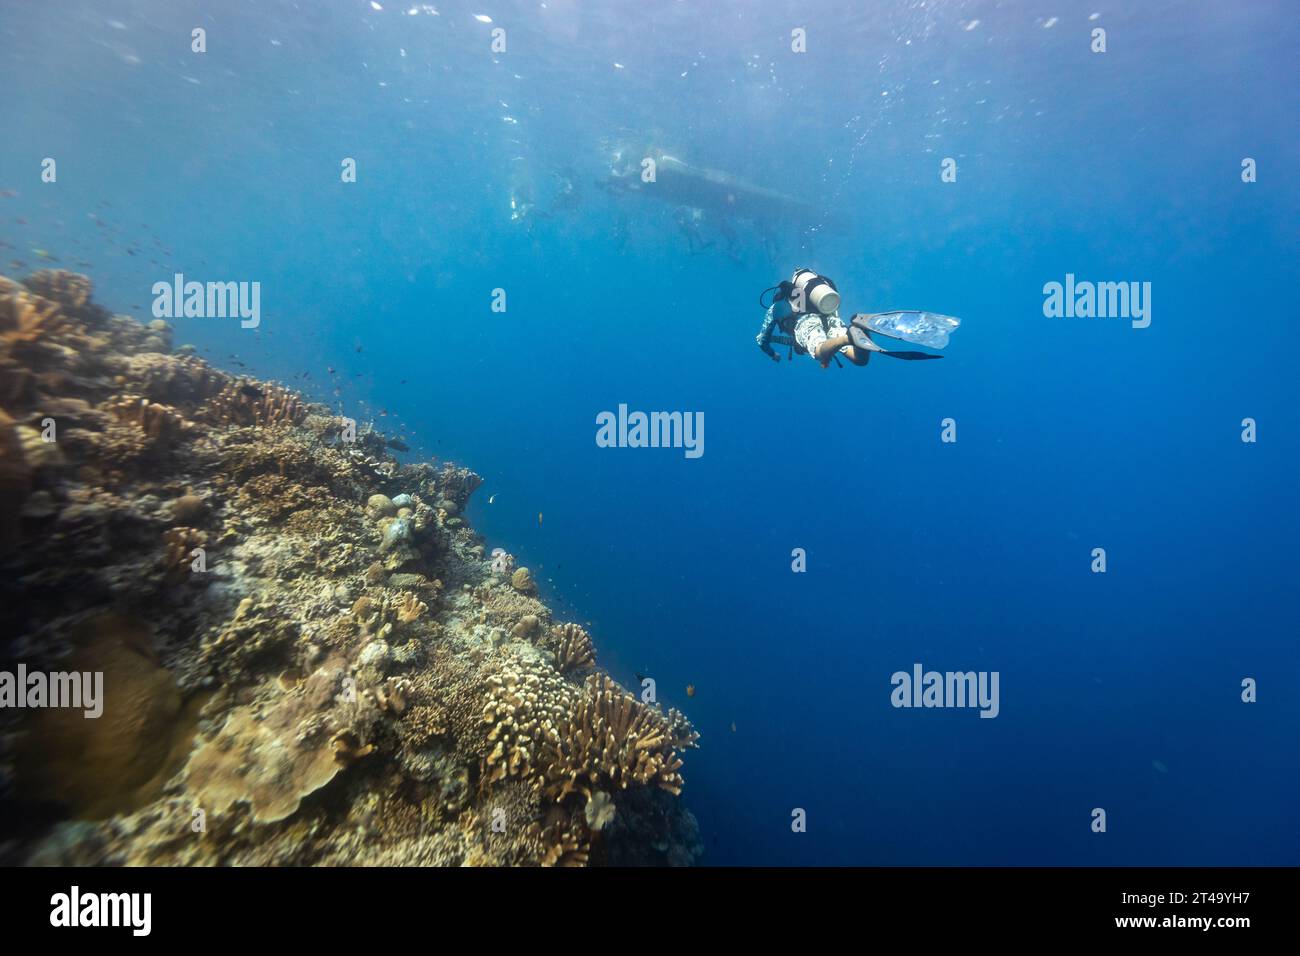 Plongée sous-marine monte et retourne en bateau tout en plongeant dans les eaux bleues tropicales au-dessus d'un récif de corail Banque D'Images